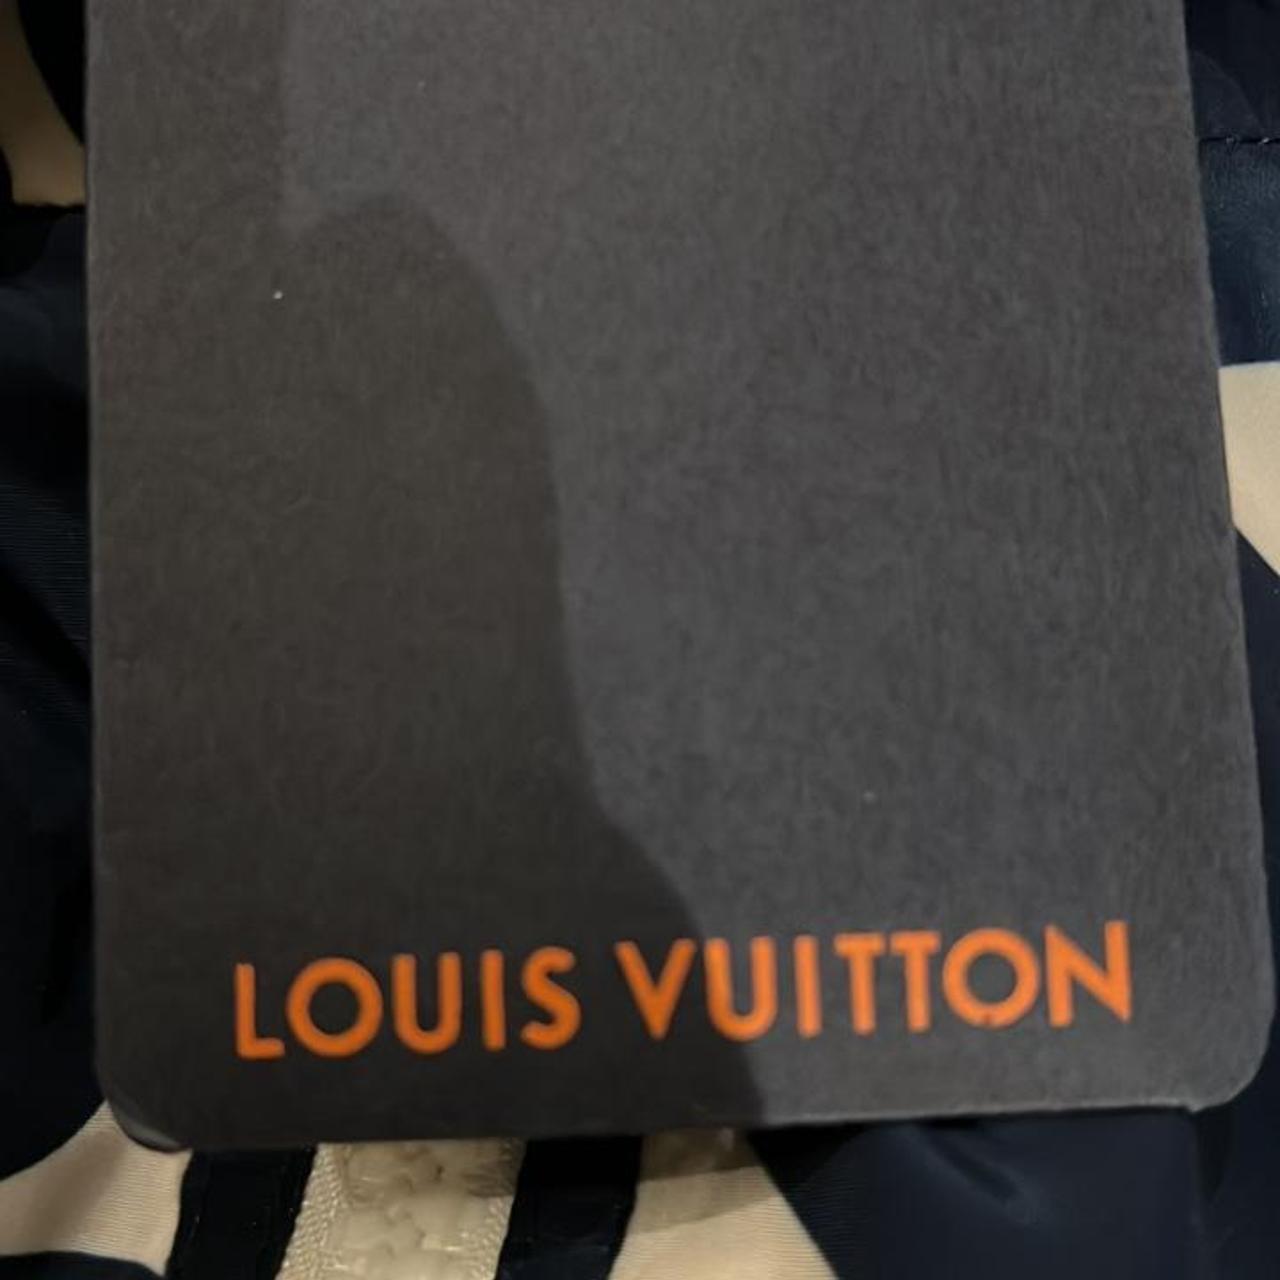 Louis Vuitton woman's track suite size 36 blue & - Depop